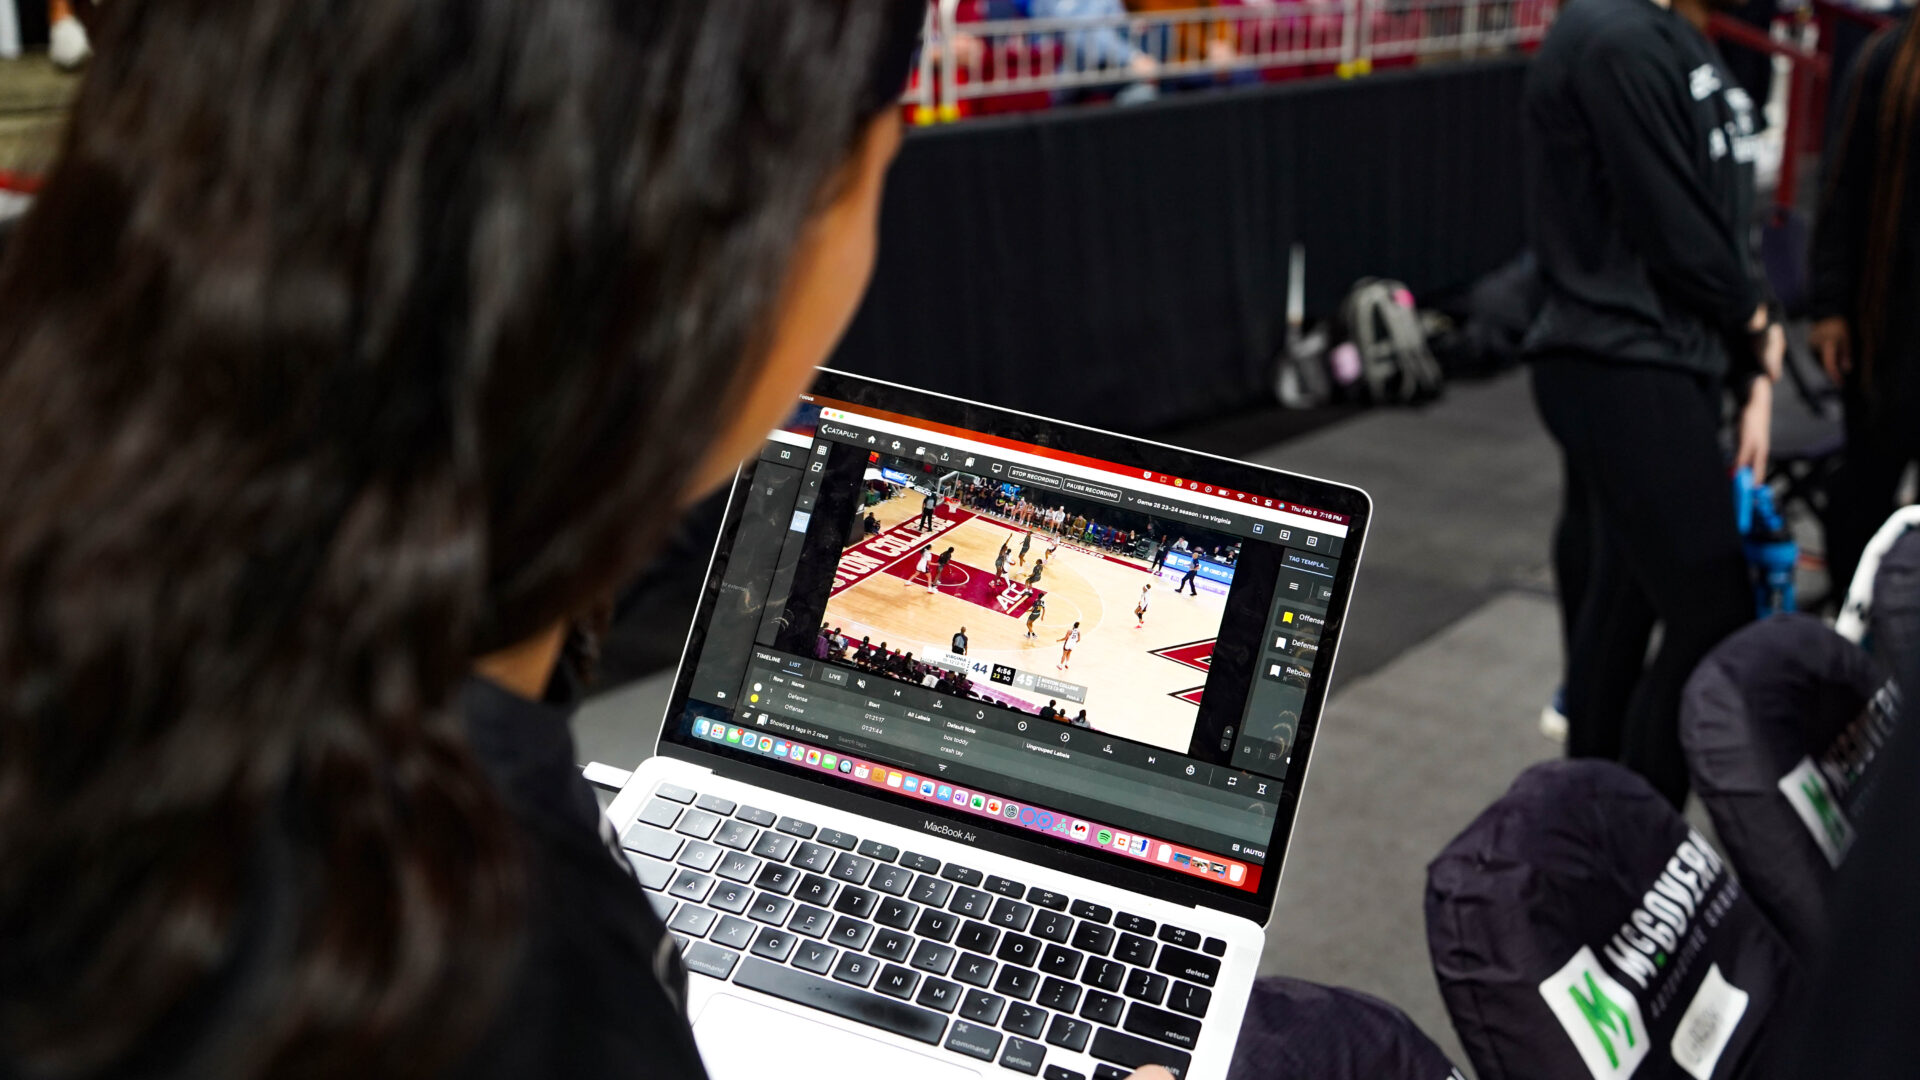 Está ocorrendo uma interação focada entre um jogador de basquete do Boston College e um treinador, com a análise do Pro Video Focus visível na tela do laptop. Isto destaca a integração da análise de vídeo ao vivo no seu treino, crucial para melhorar o desempenho e as táticas do jogo.